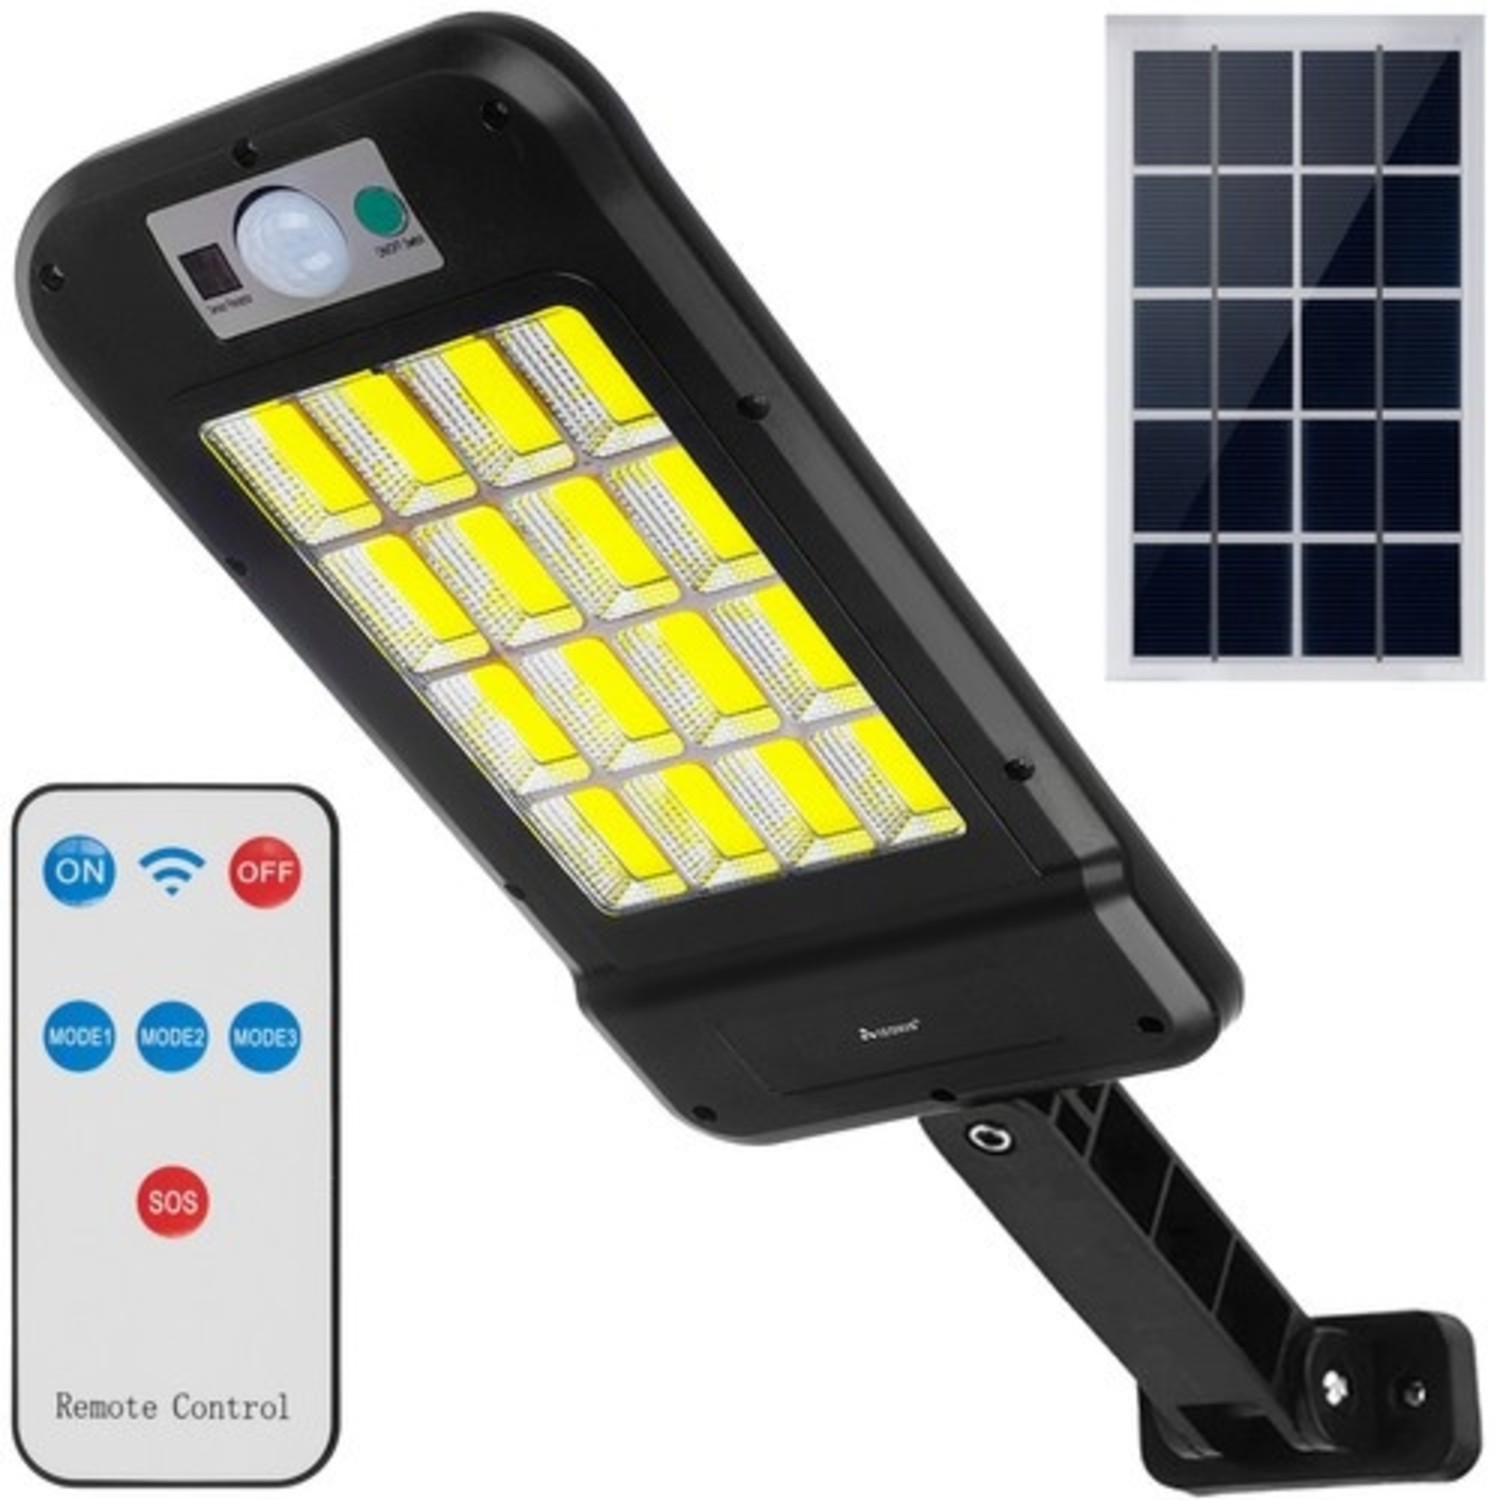 de jouwe AIDS doel Solar Buitenlamp 240 COB LED's op Zonneenergie met Sensor - 4 Modus -  Multiaza.com